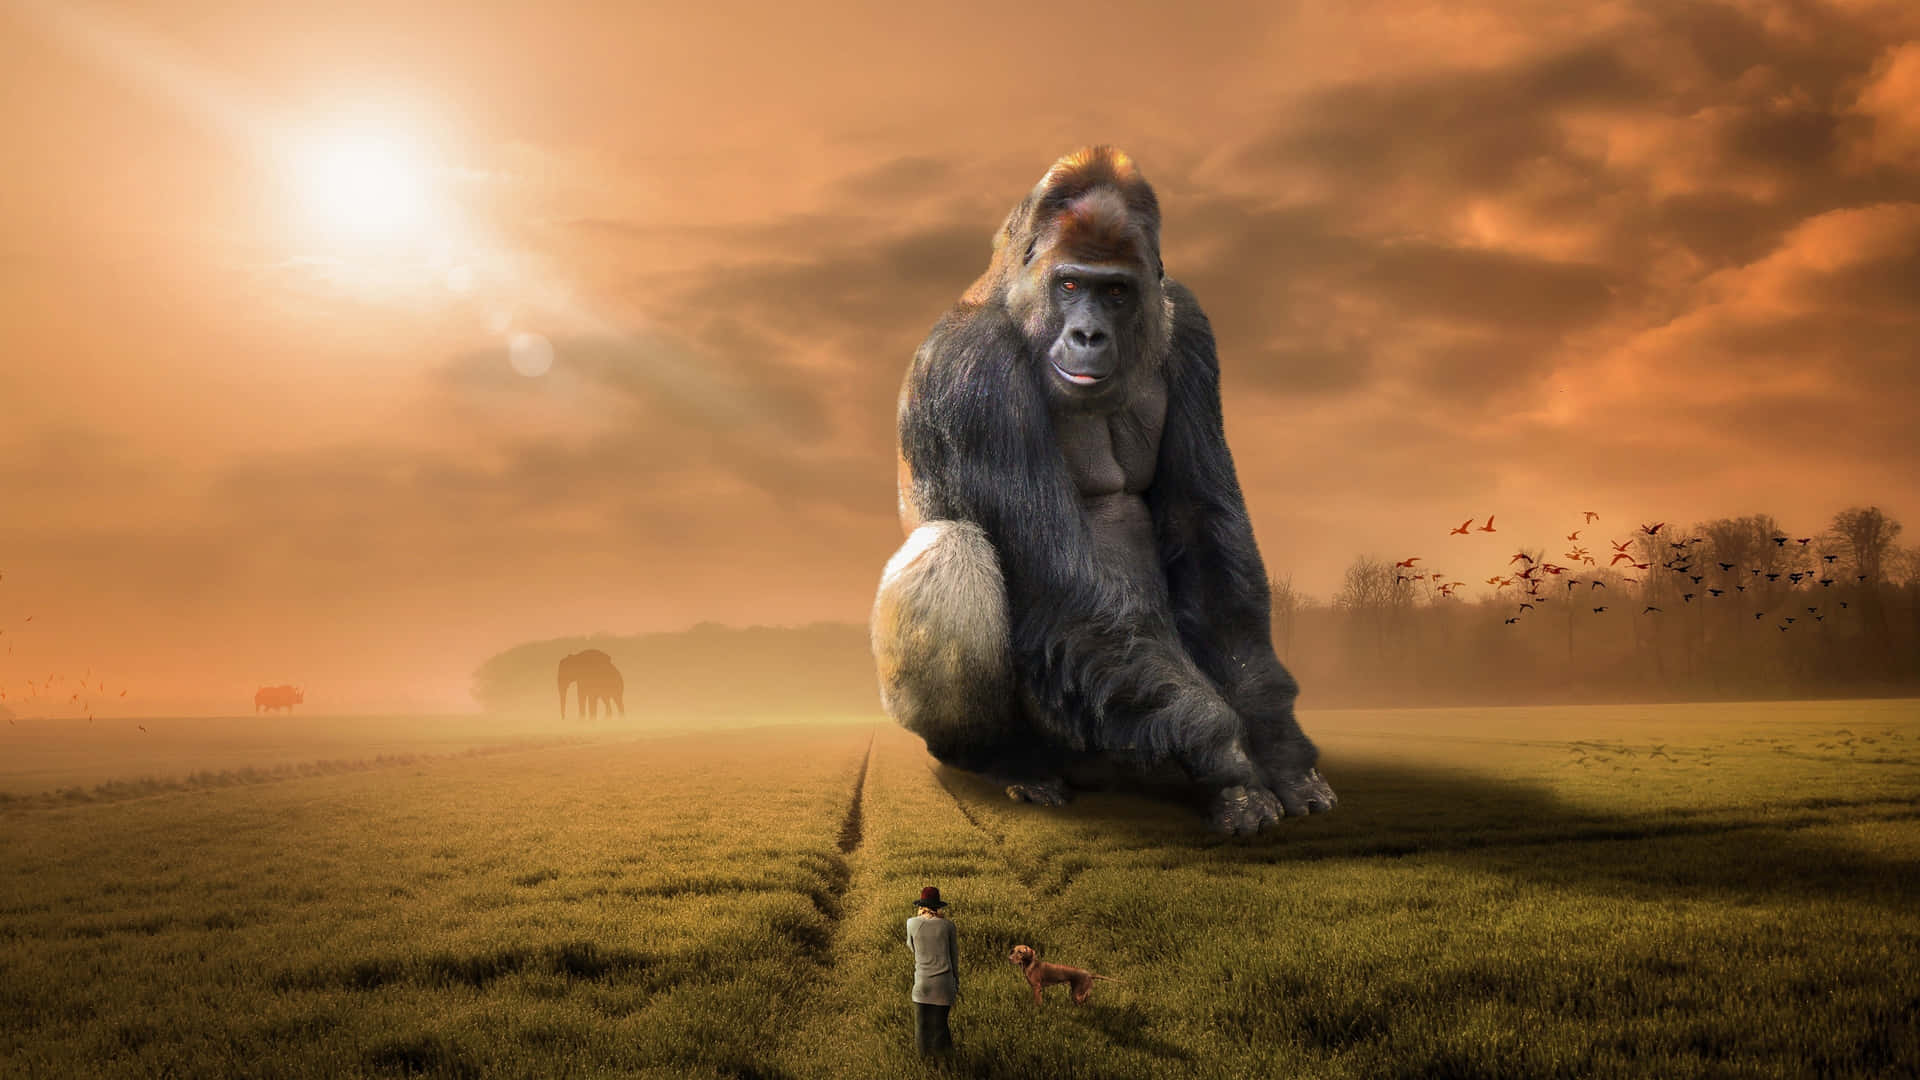 Sehensie Den Mächtigen King Kong Auf Der Großen Leinwand In 4k Ultra-hd. Wallpaper